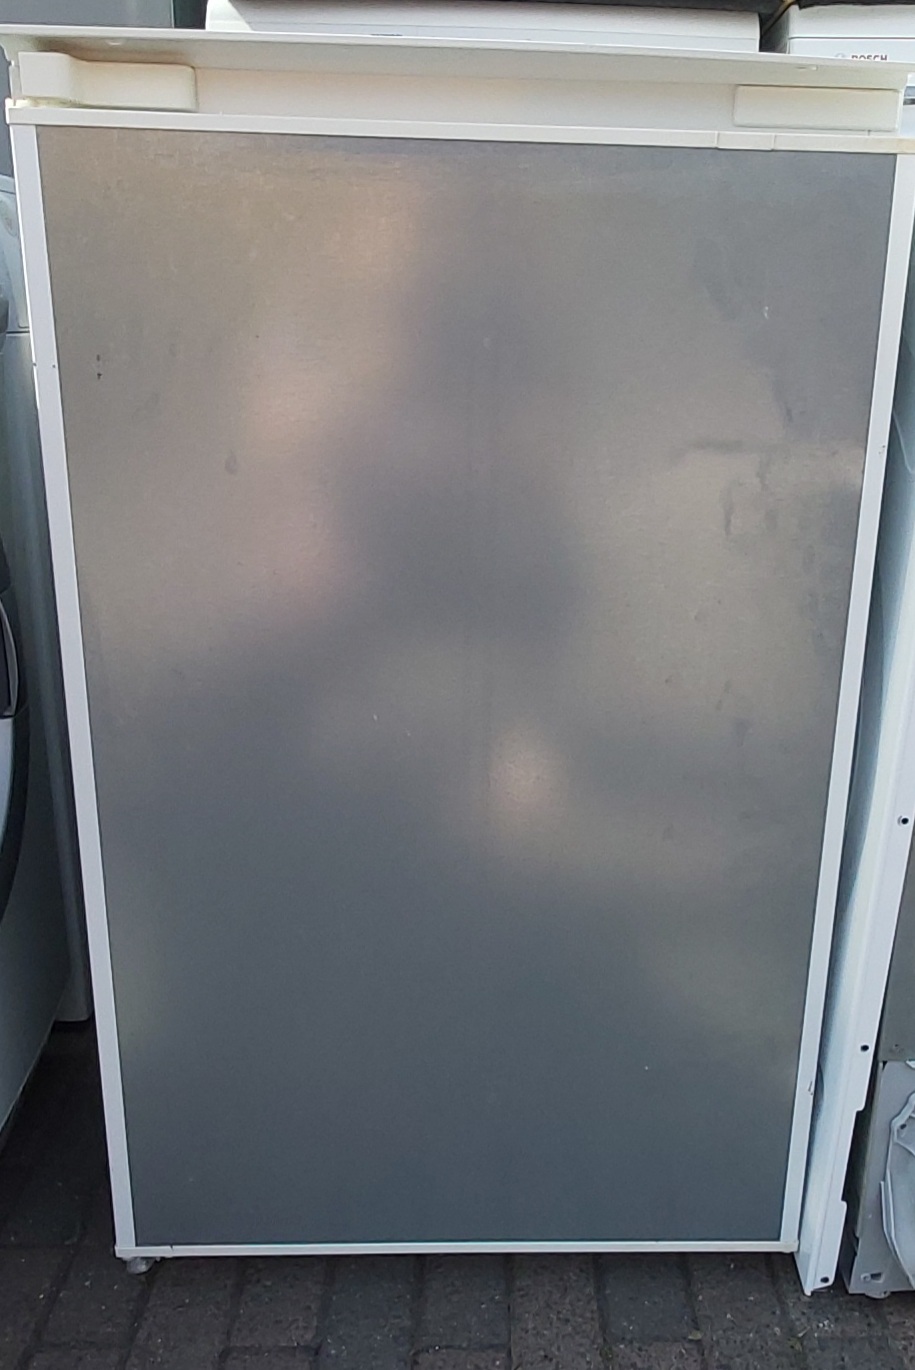 Siemens KI18LV00 inb koelkast